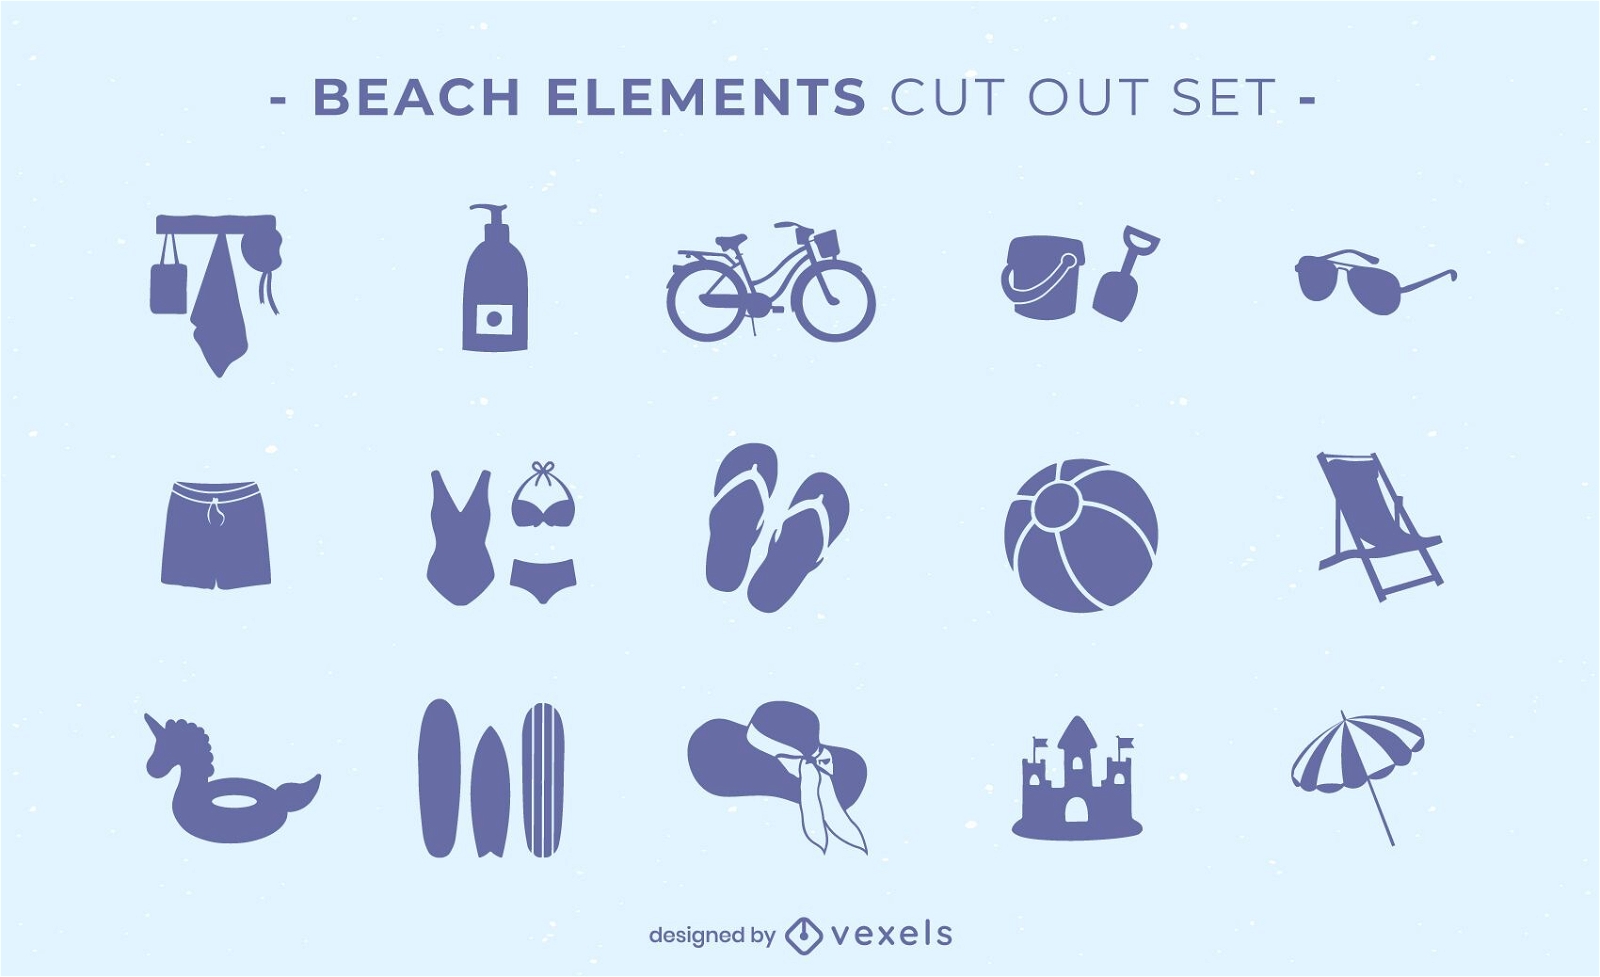 Beach elements cut-out set